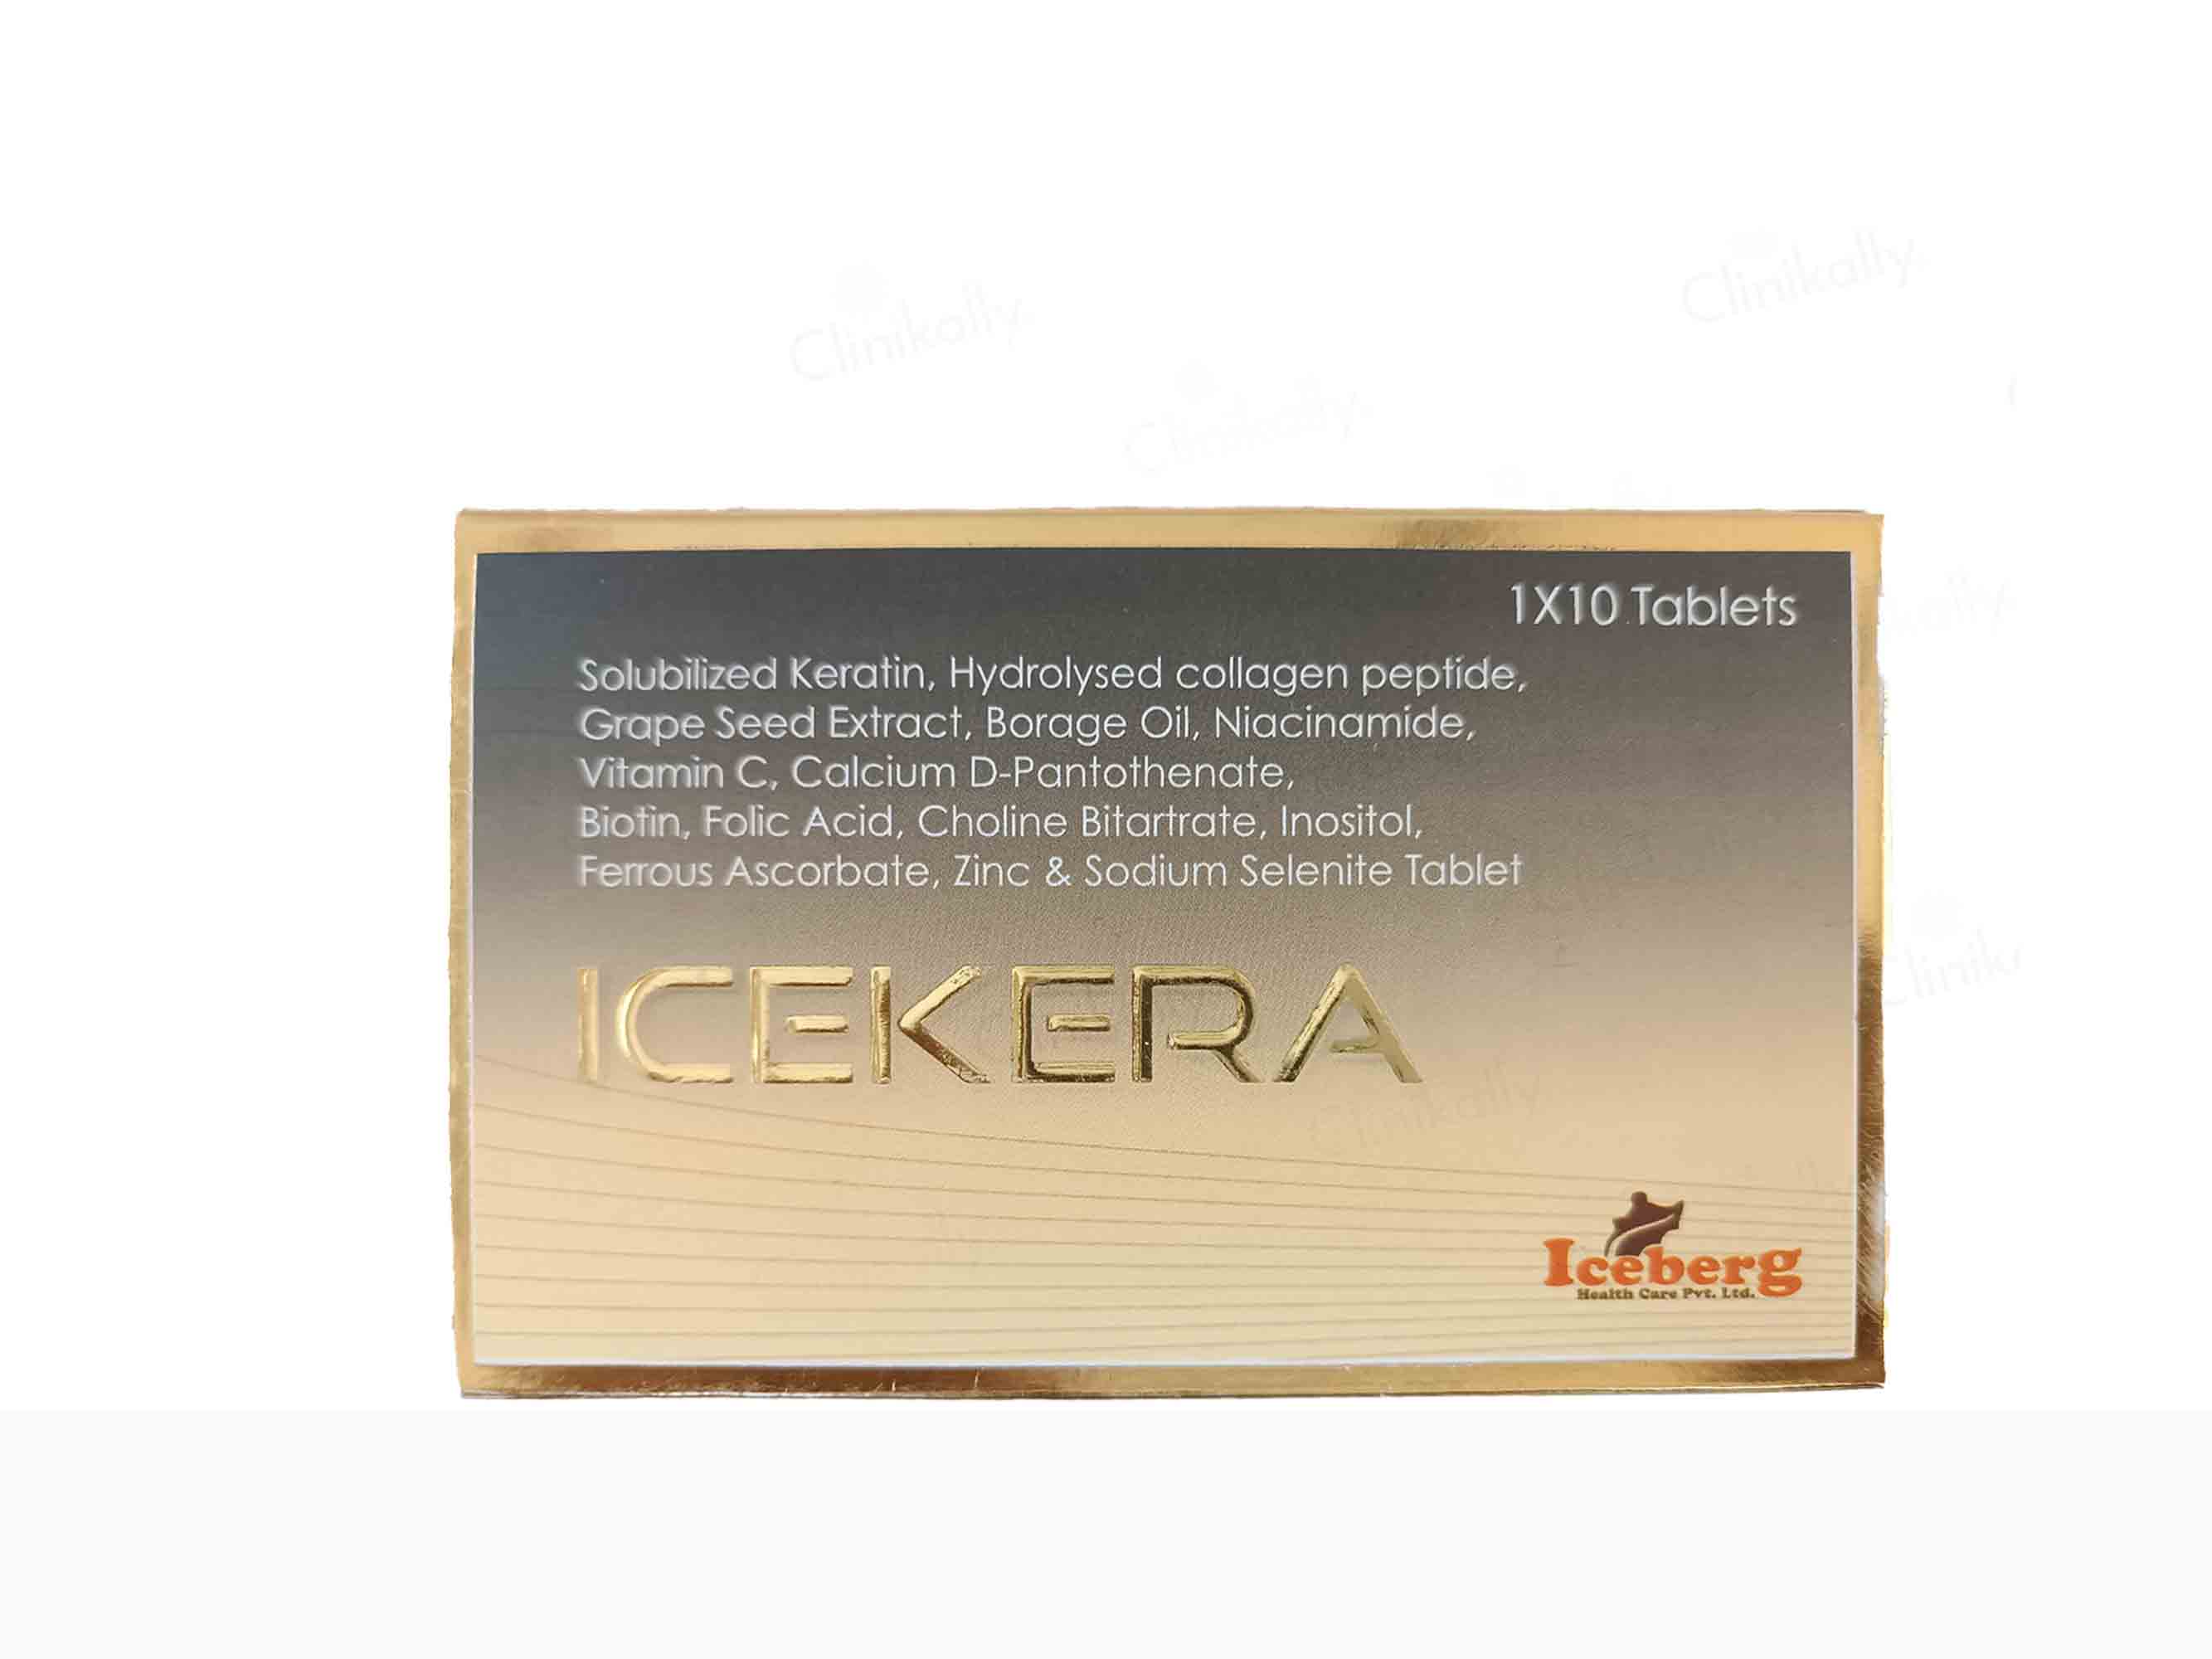 Icekera Tablet - Clinikally